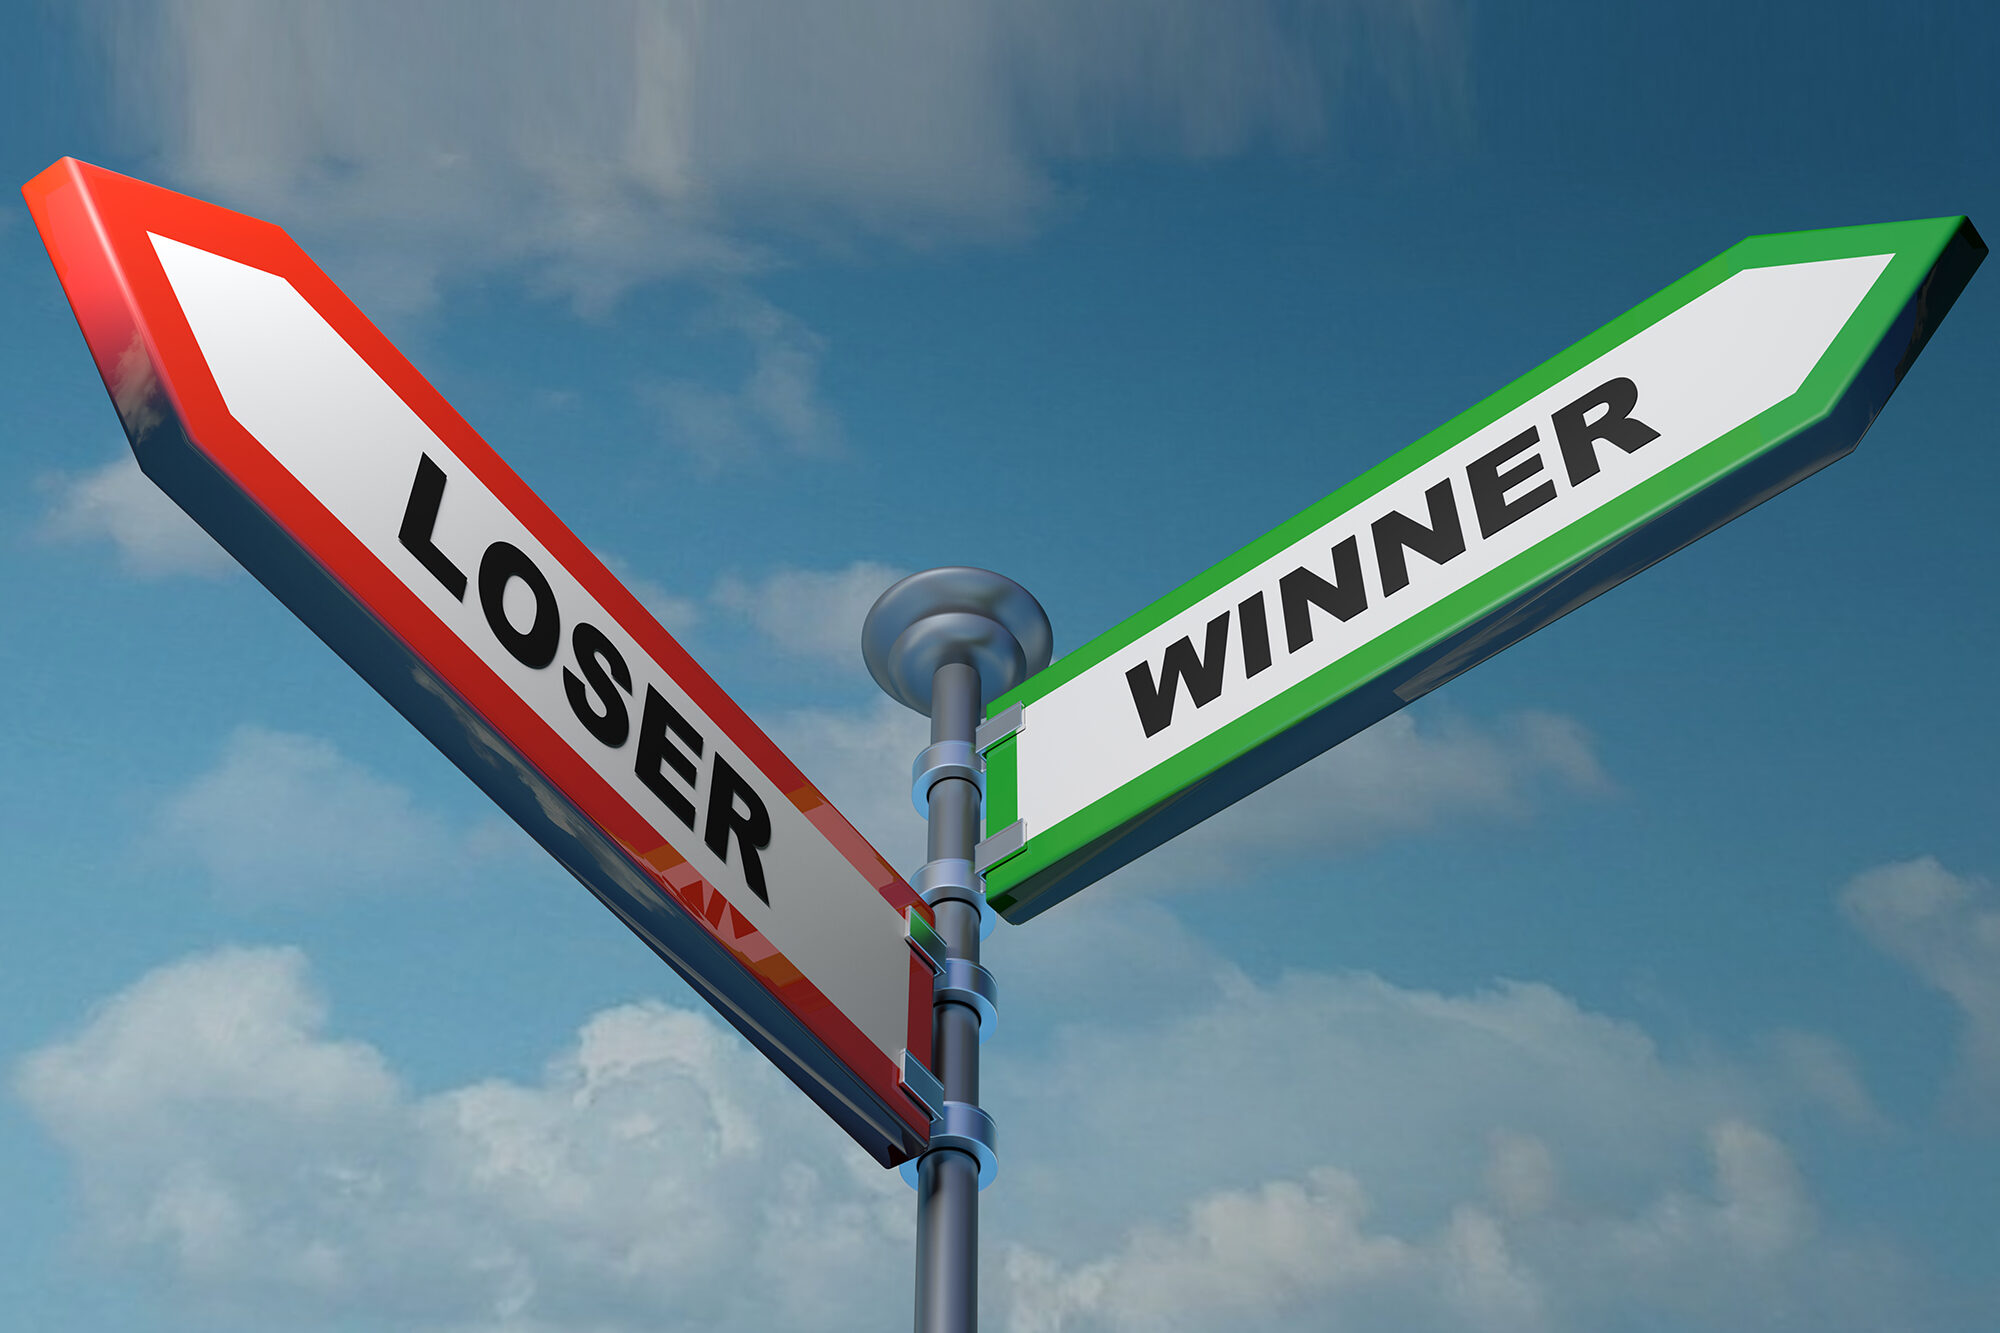 Loser - Winner street signs - 3D rendering illustration